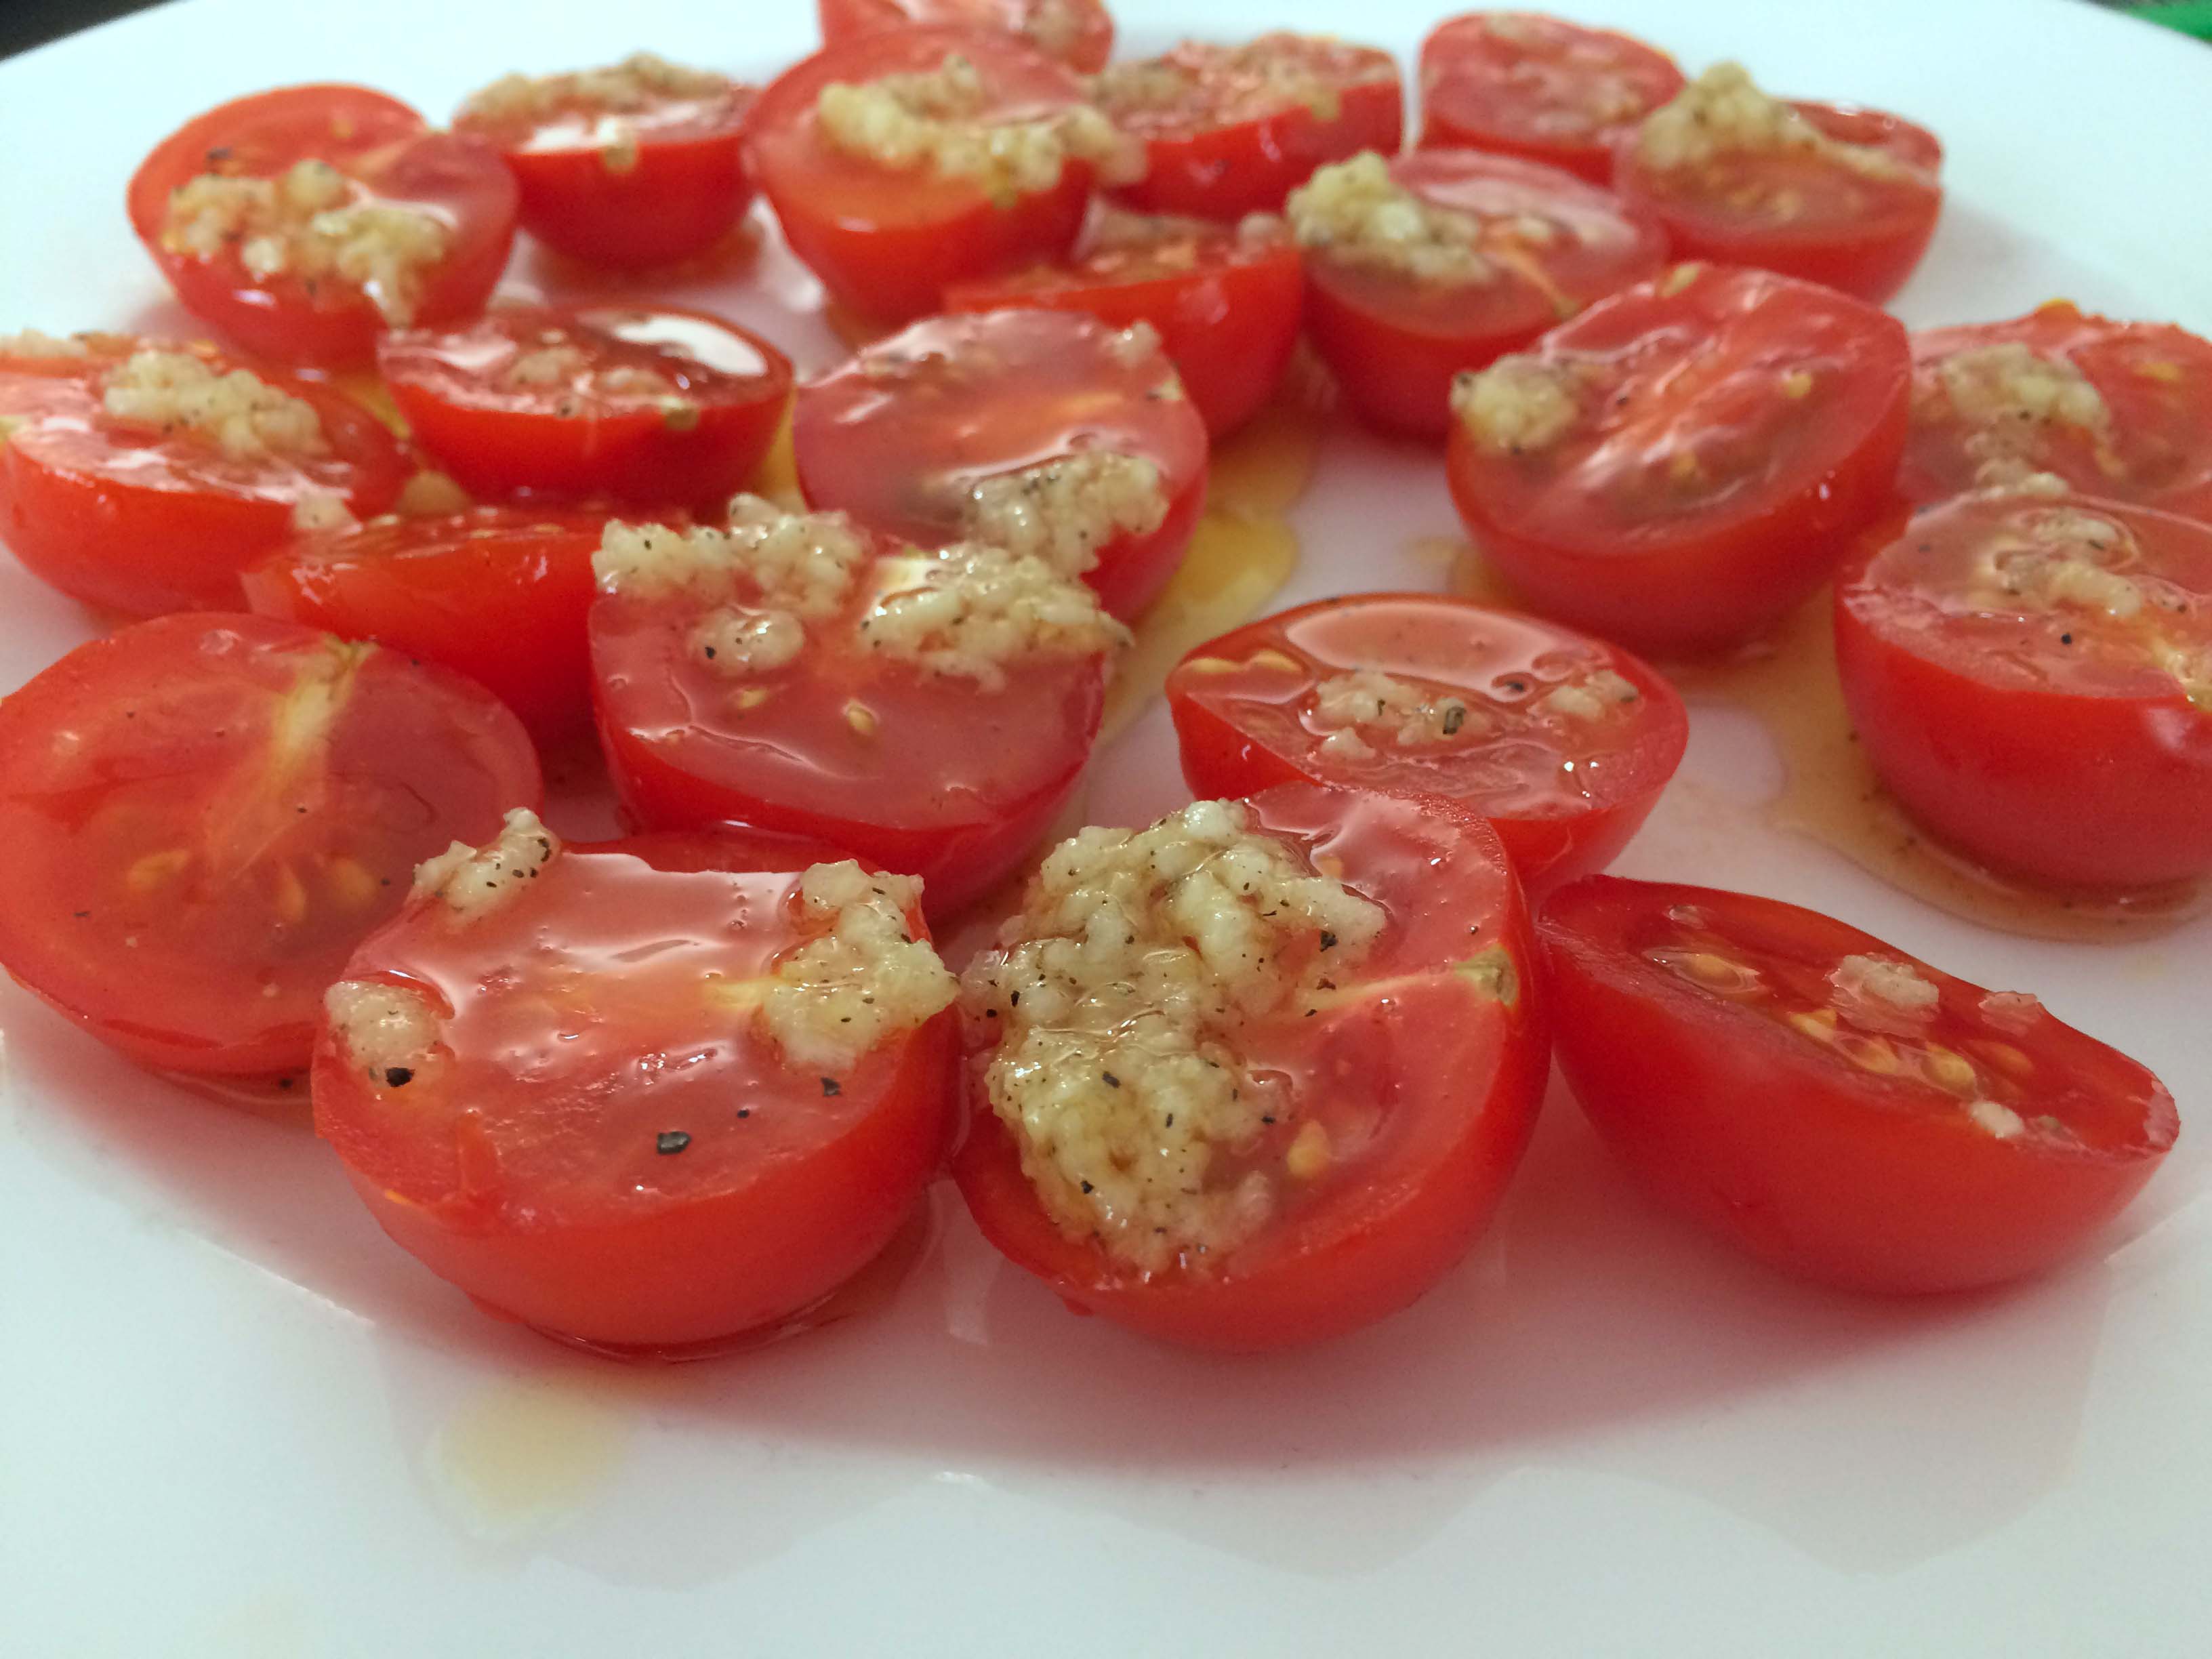 tomaatjes met knoflook